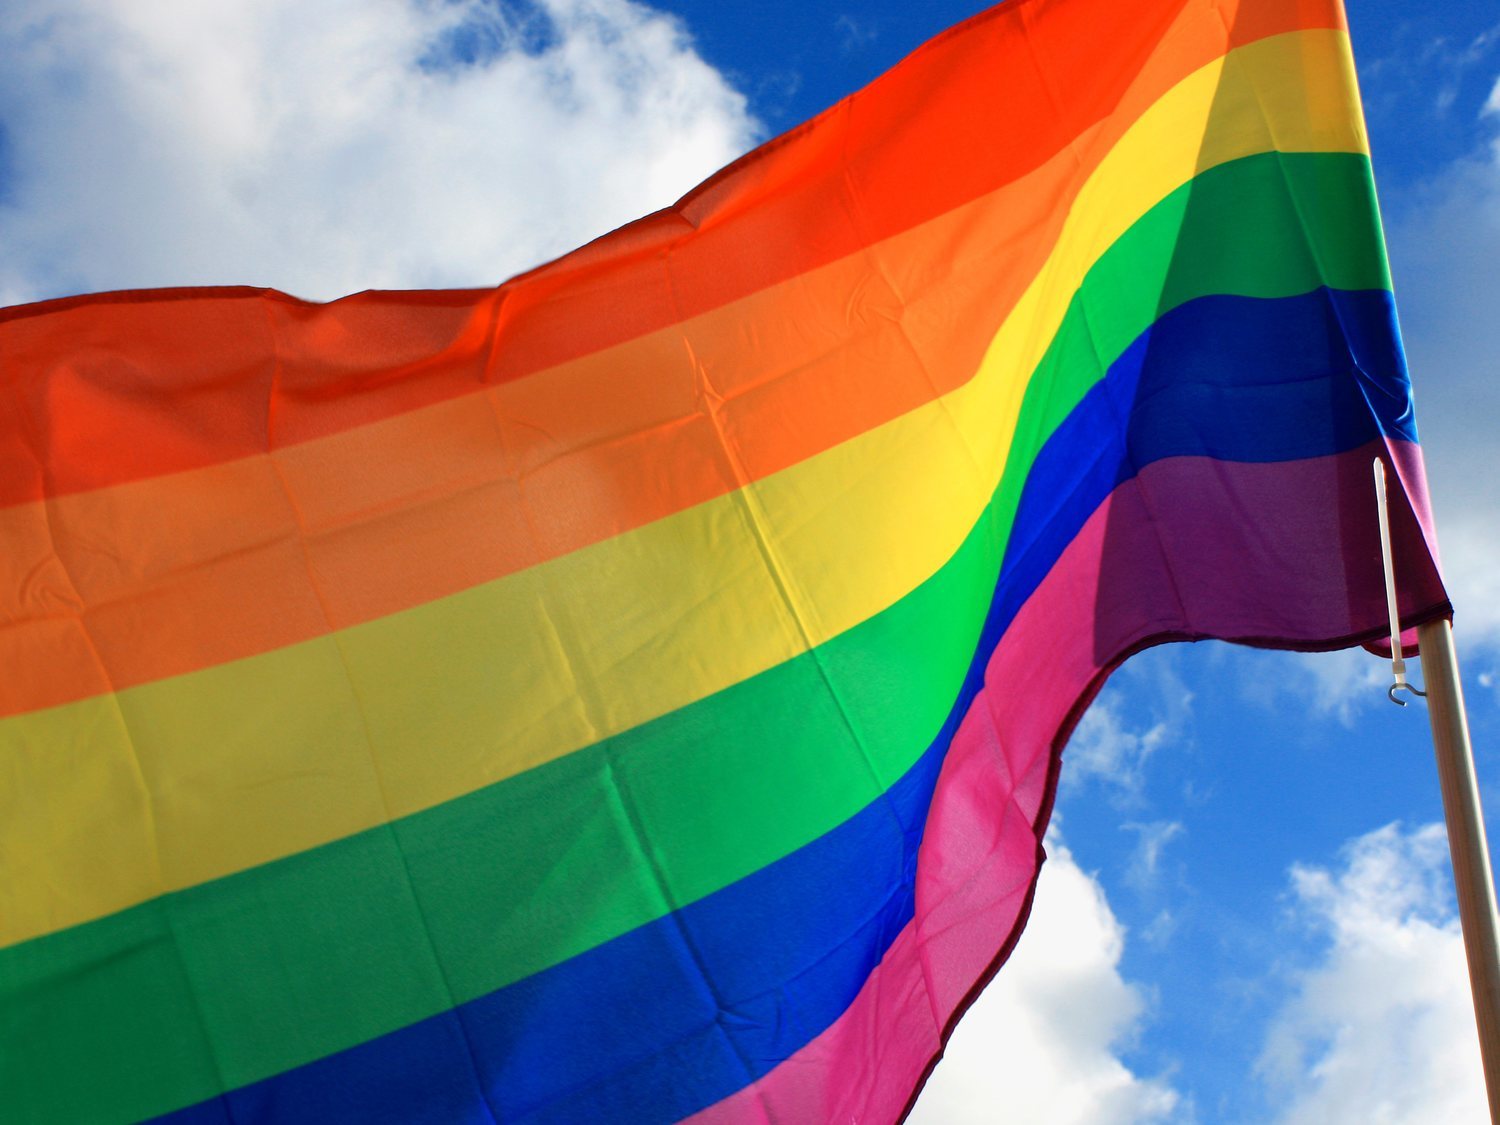 Historia de la bandera LGTBI: El significado de sus colores